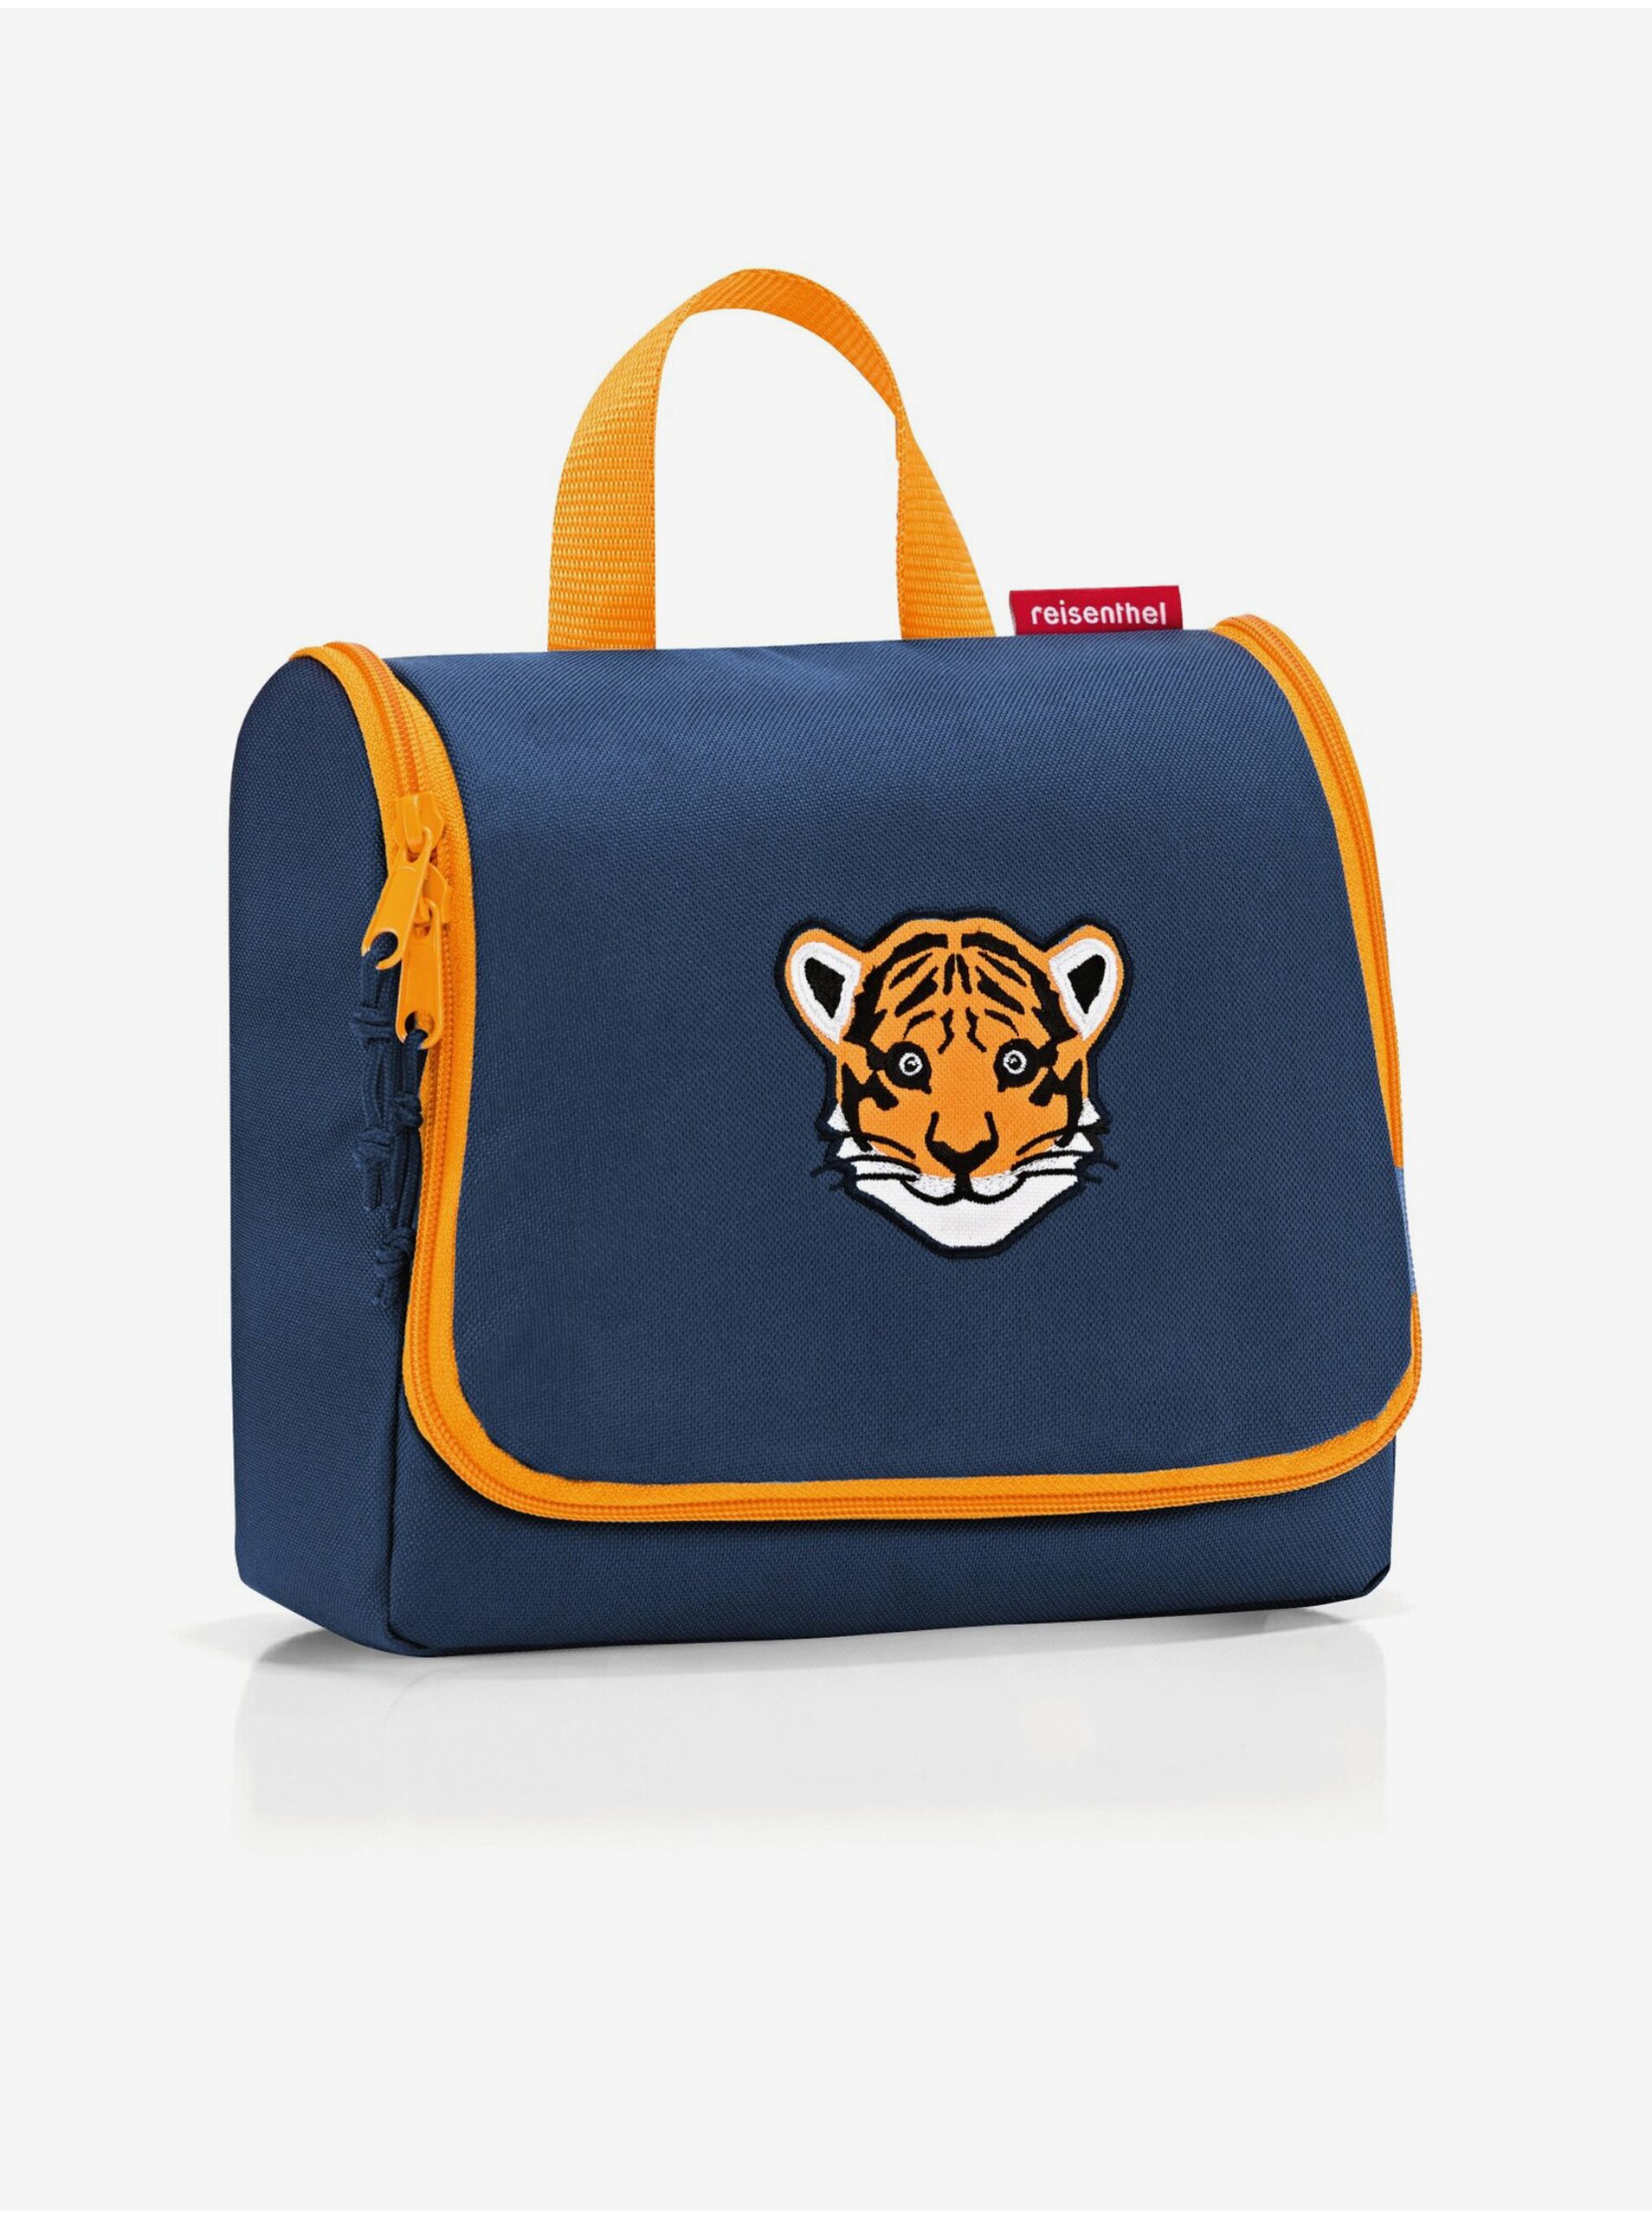 E-shop Tmavomodrá chlapčenská kozmetická taška s motívom tigra Reisenthel Toiletbag Kids Tiger